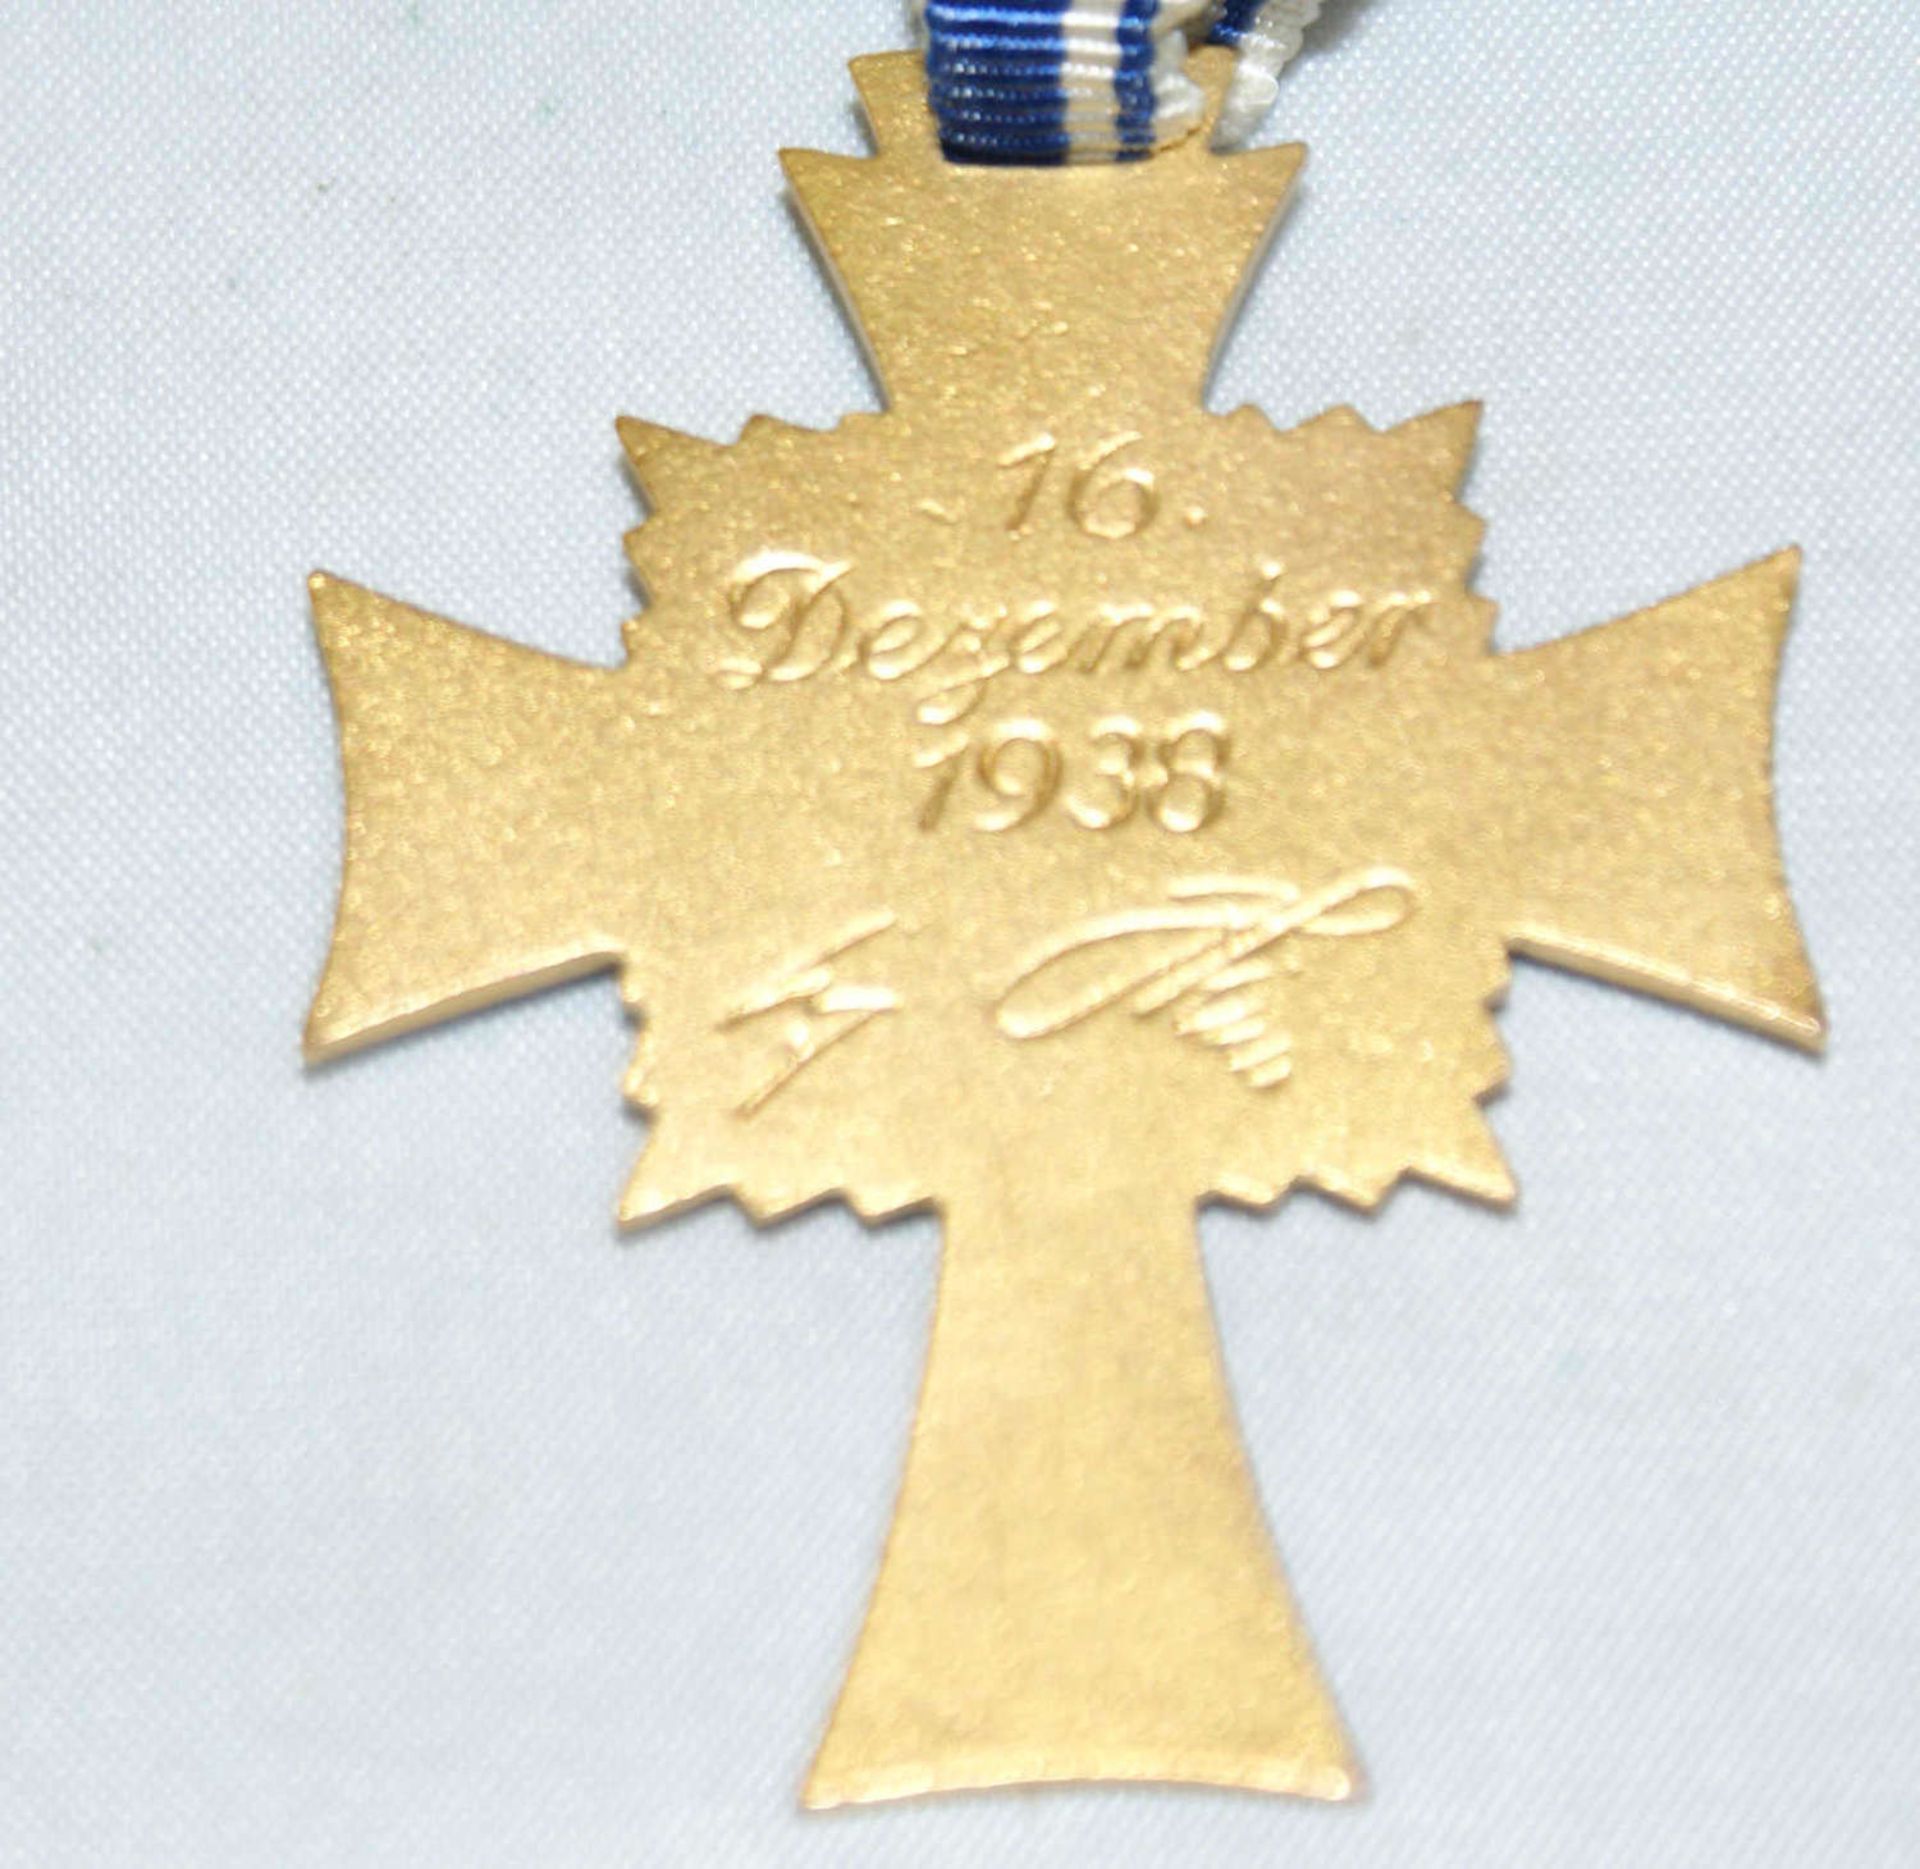 Mutterkreuz 1938, Deutschland 1933-1945, 3. Reich, Mutterkreuz in Gold, 1. Stufe, 2. Modell. - Bild 3 aus 3